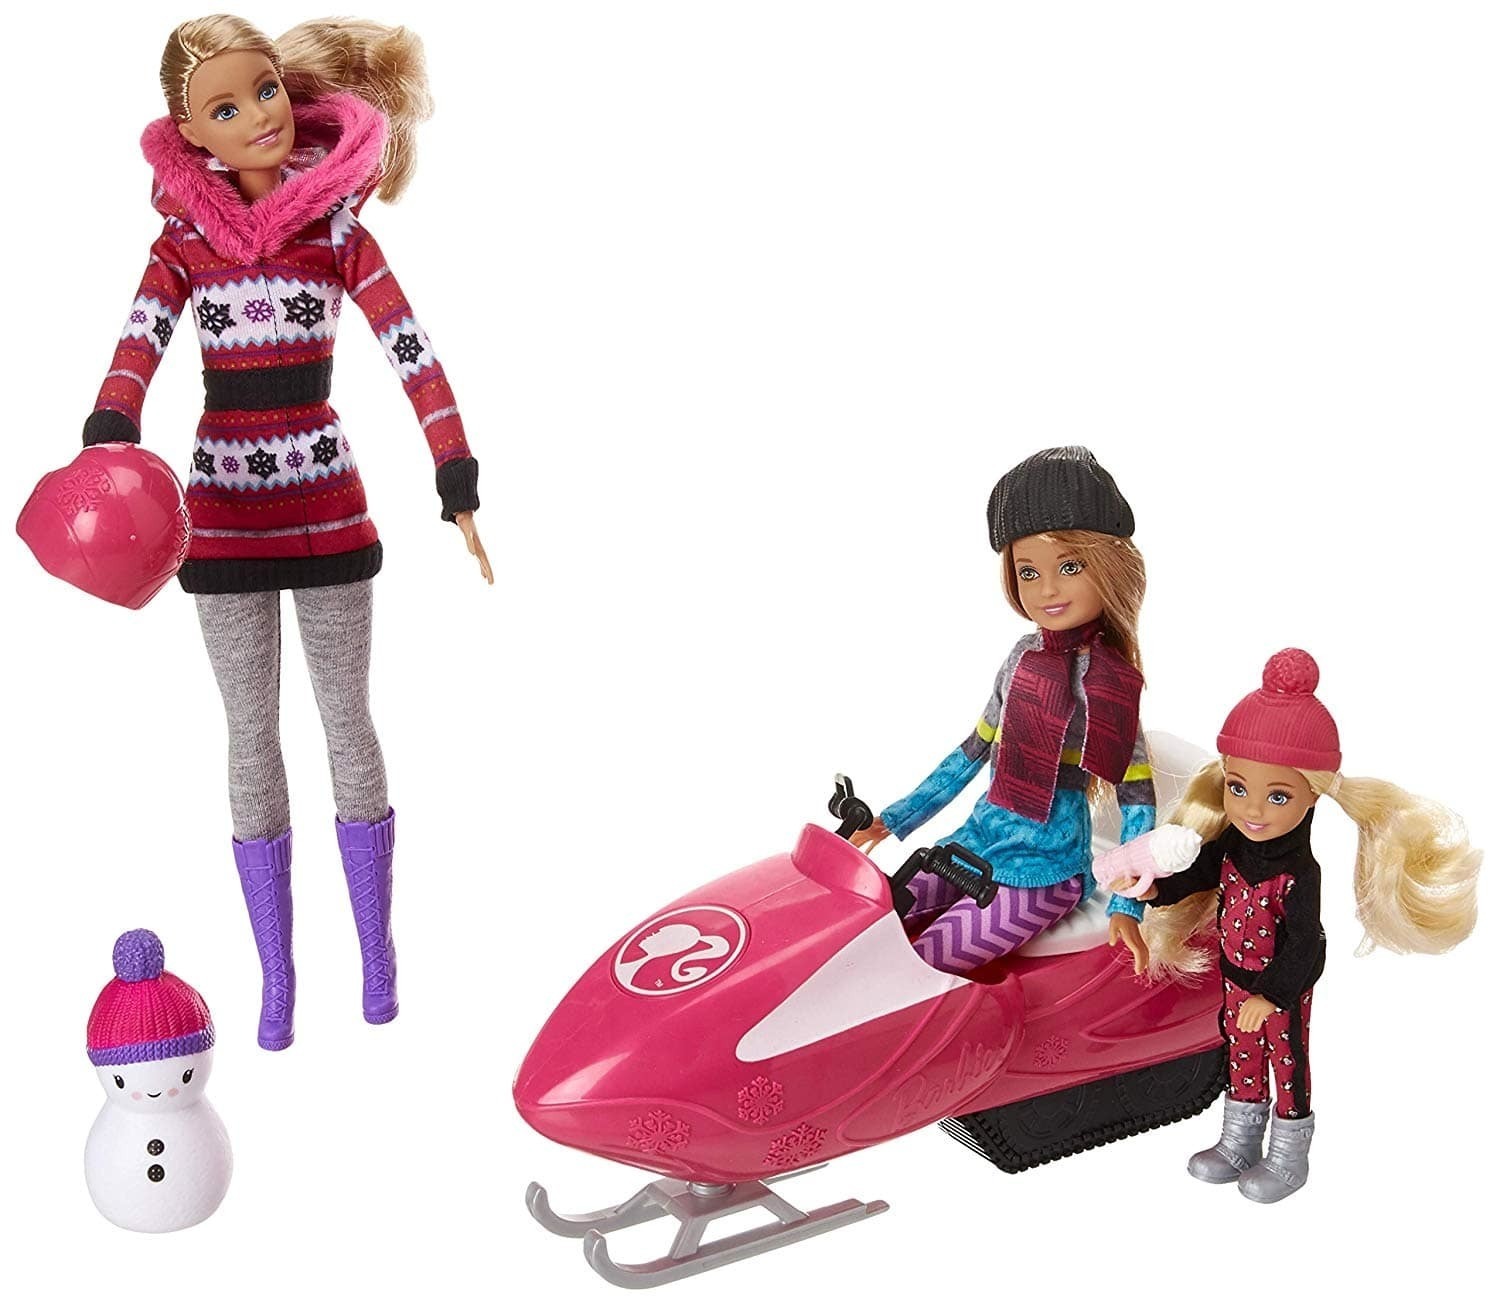 Набор кукол Barbie сестры со снегоходом, 30 см, fdr73